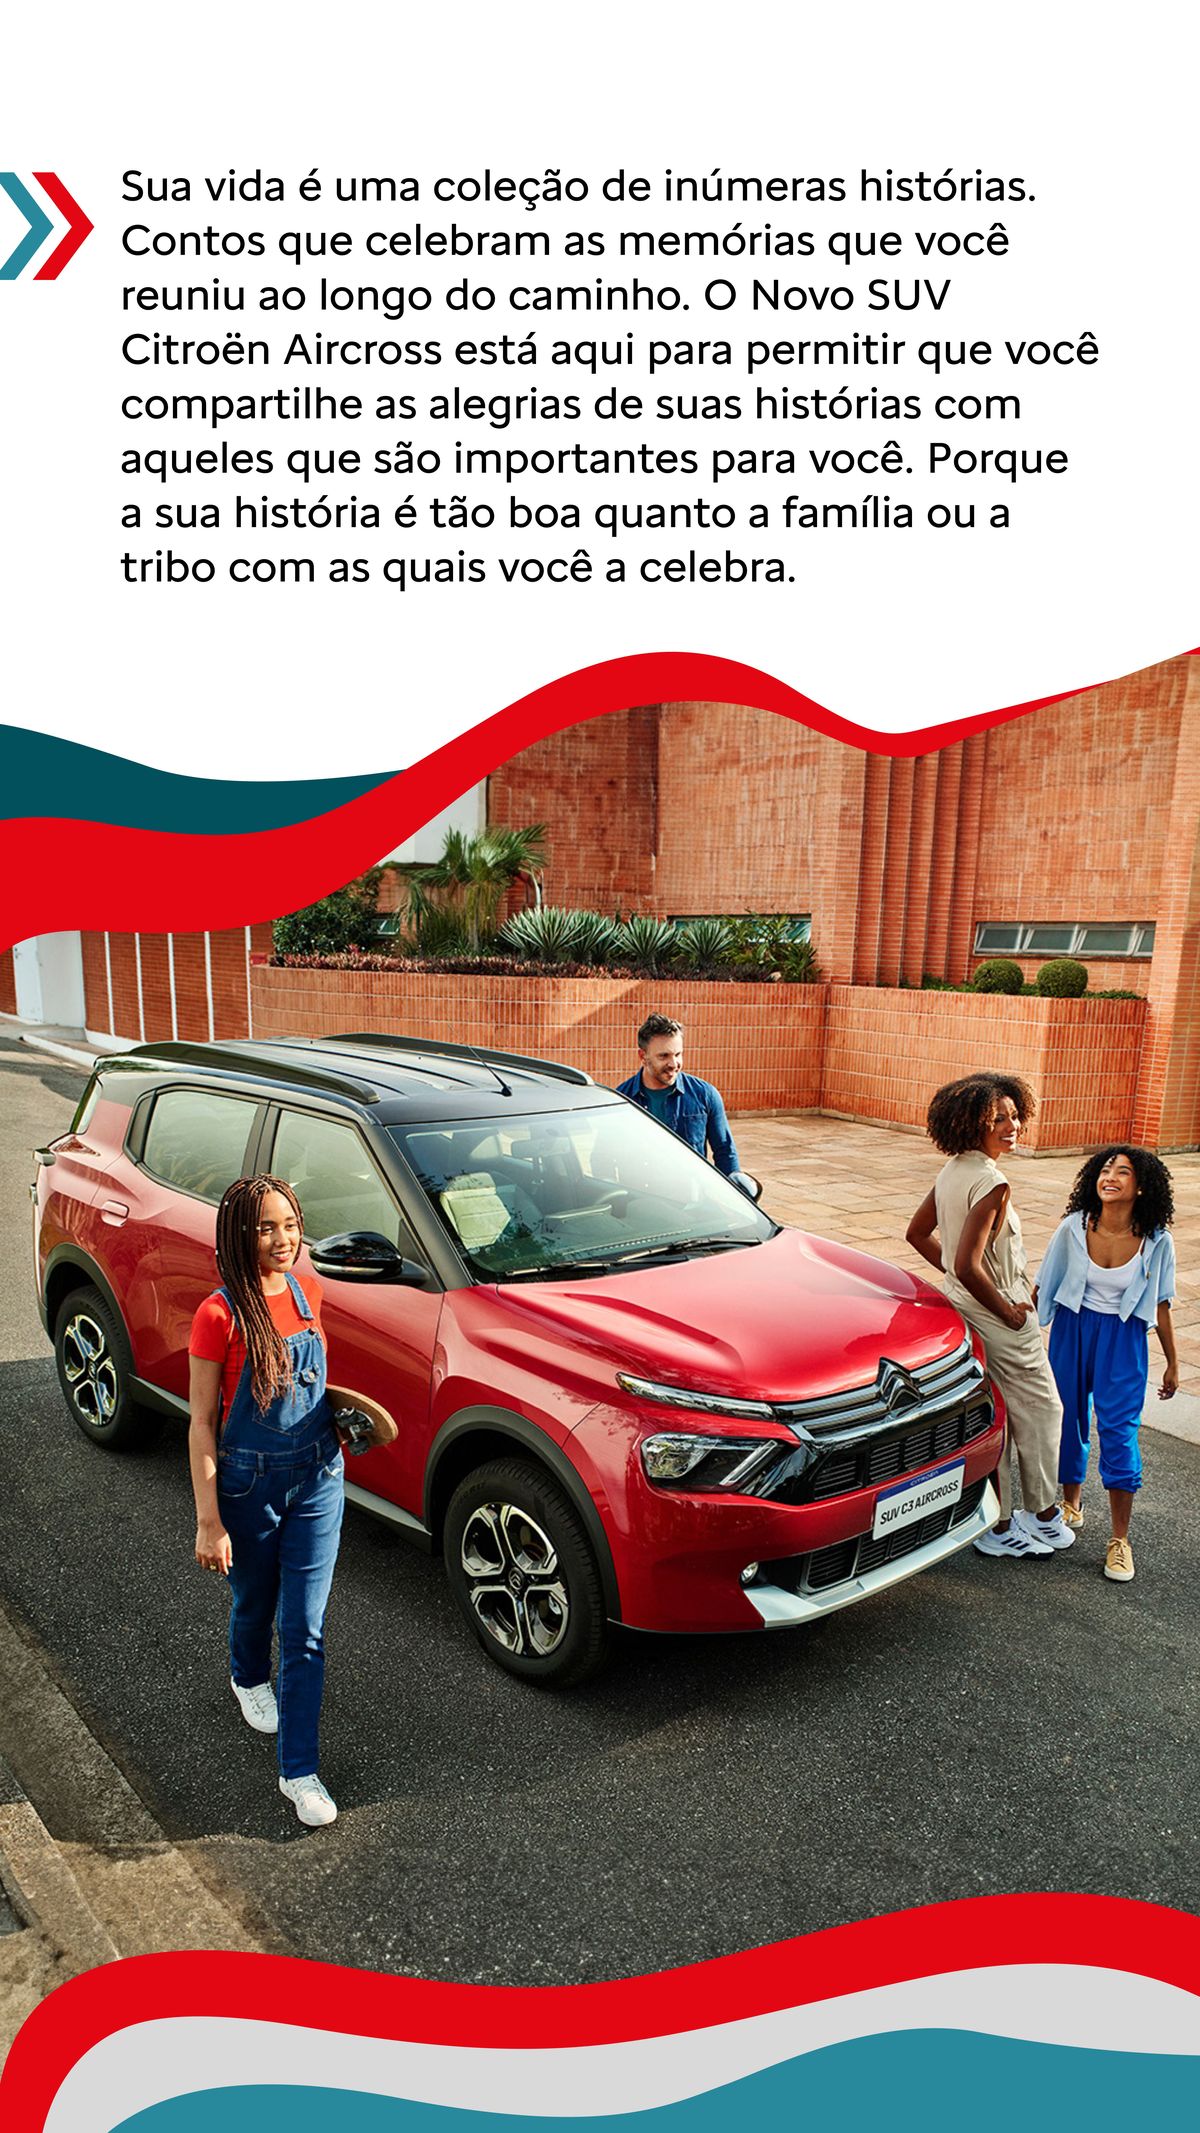 Celebre suas histórias com o Novo SUV Citroën Aircross